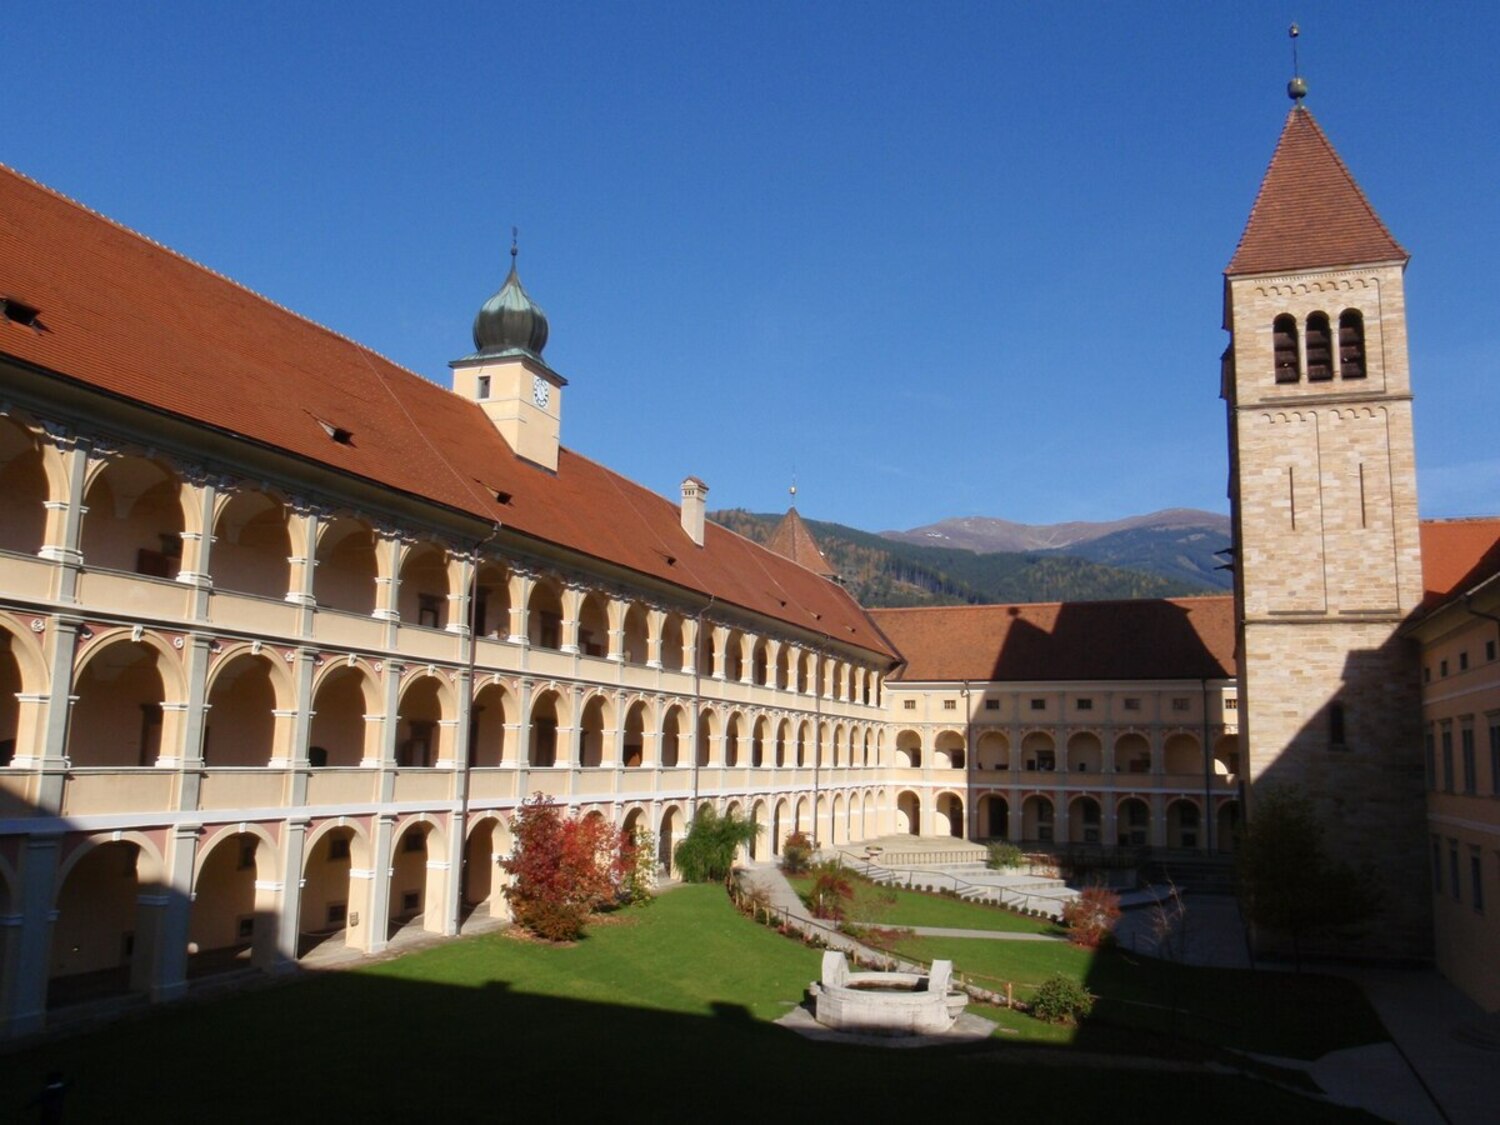 19-surprising-facts-about-seckau-abbey